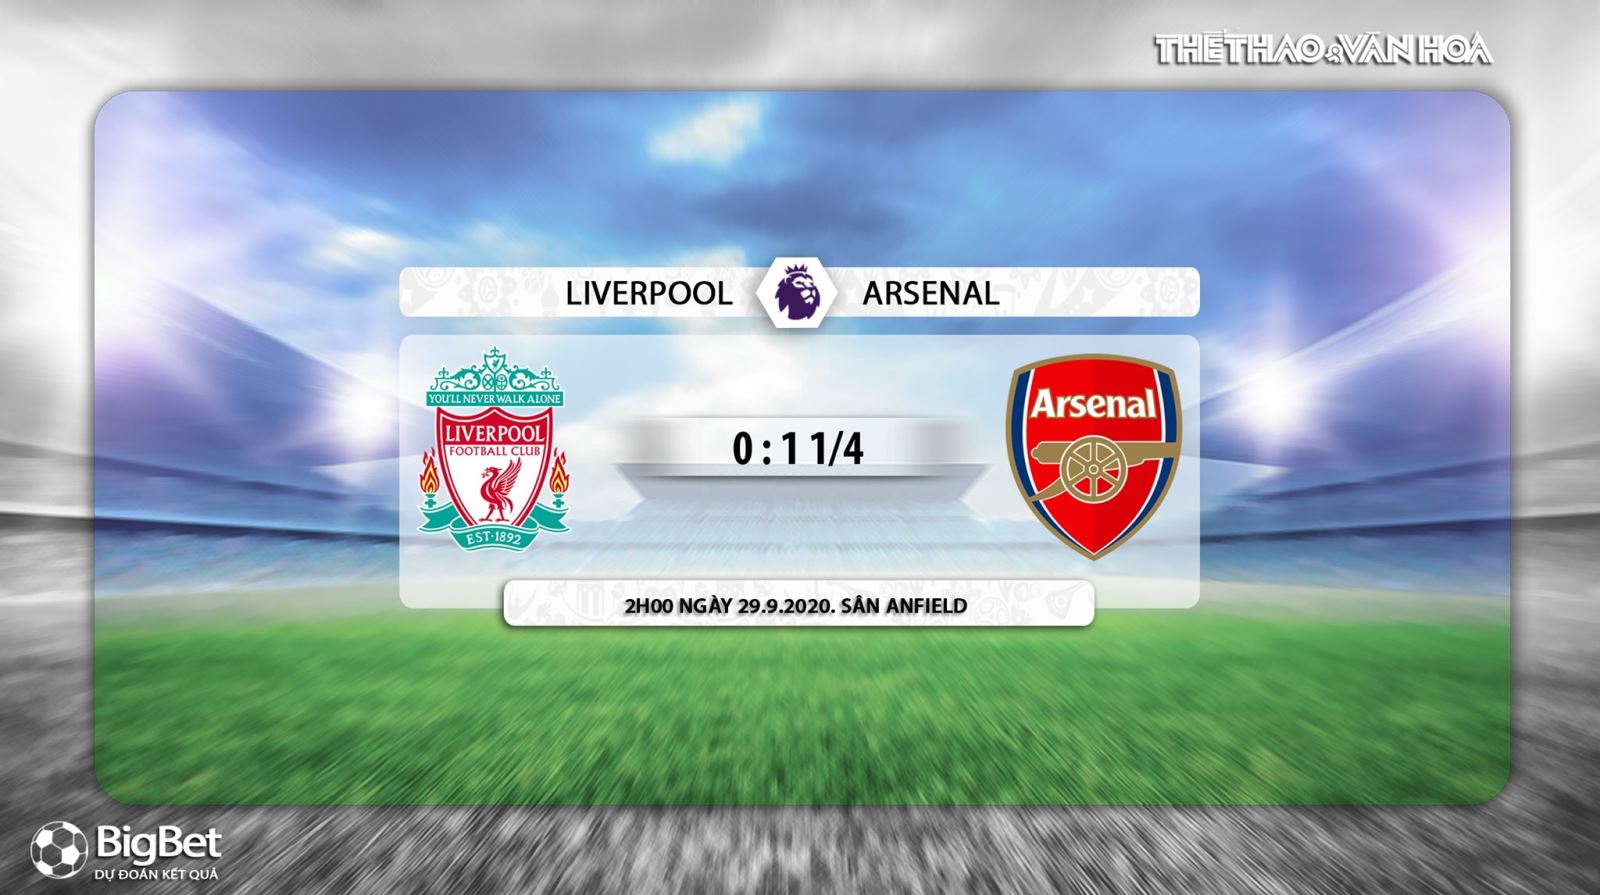 Liverpool vs Arsenal, Liverpool, Arseal, trực tiếp bóng đá, bóng đá, nhận định bóng đá bóng đá, nhận định bóng đá Liverpool vs Arsenal, nhận định Liverpool vs Arsenal, lịch thi đấu bóng đá